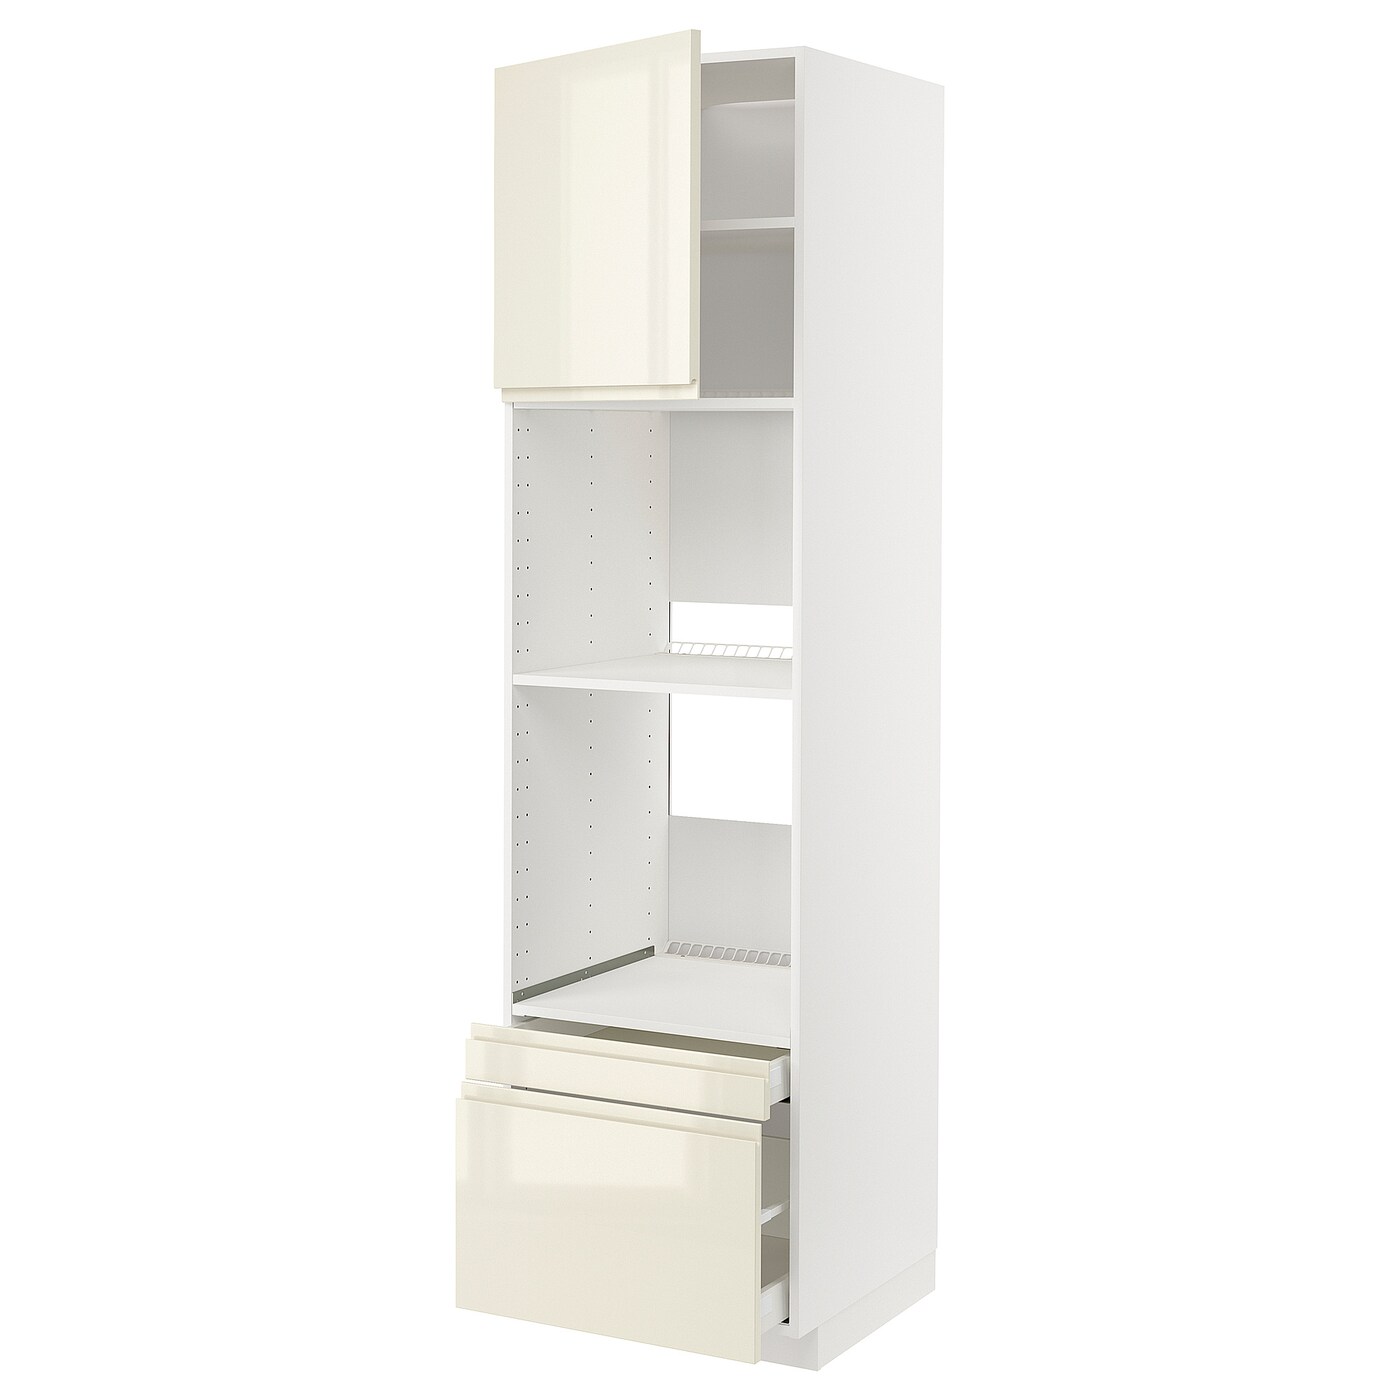 Высокий шкаф с ящиками - IKEA METOD/MAXIMERA/МЕТОД/МАКСИМЕРА ИКЕА, 200х60х60 см, белый/светло-бежевый глянцевый